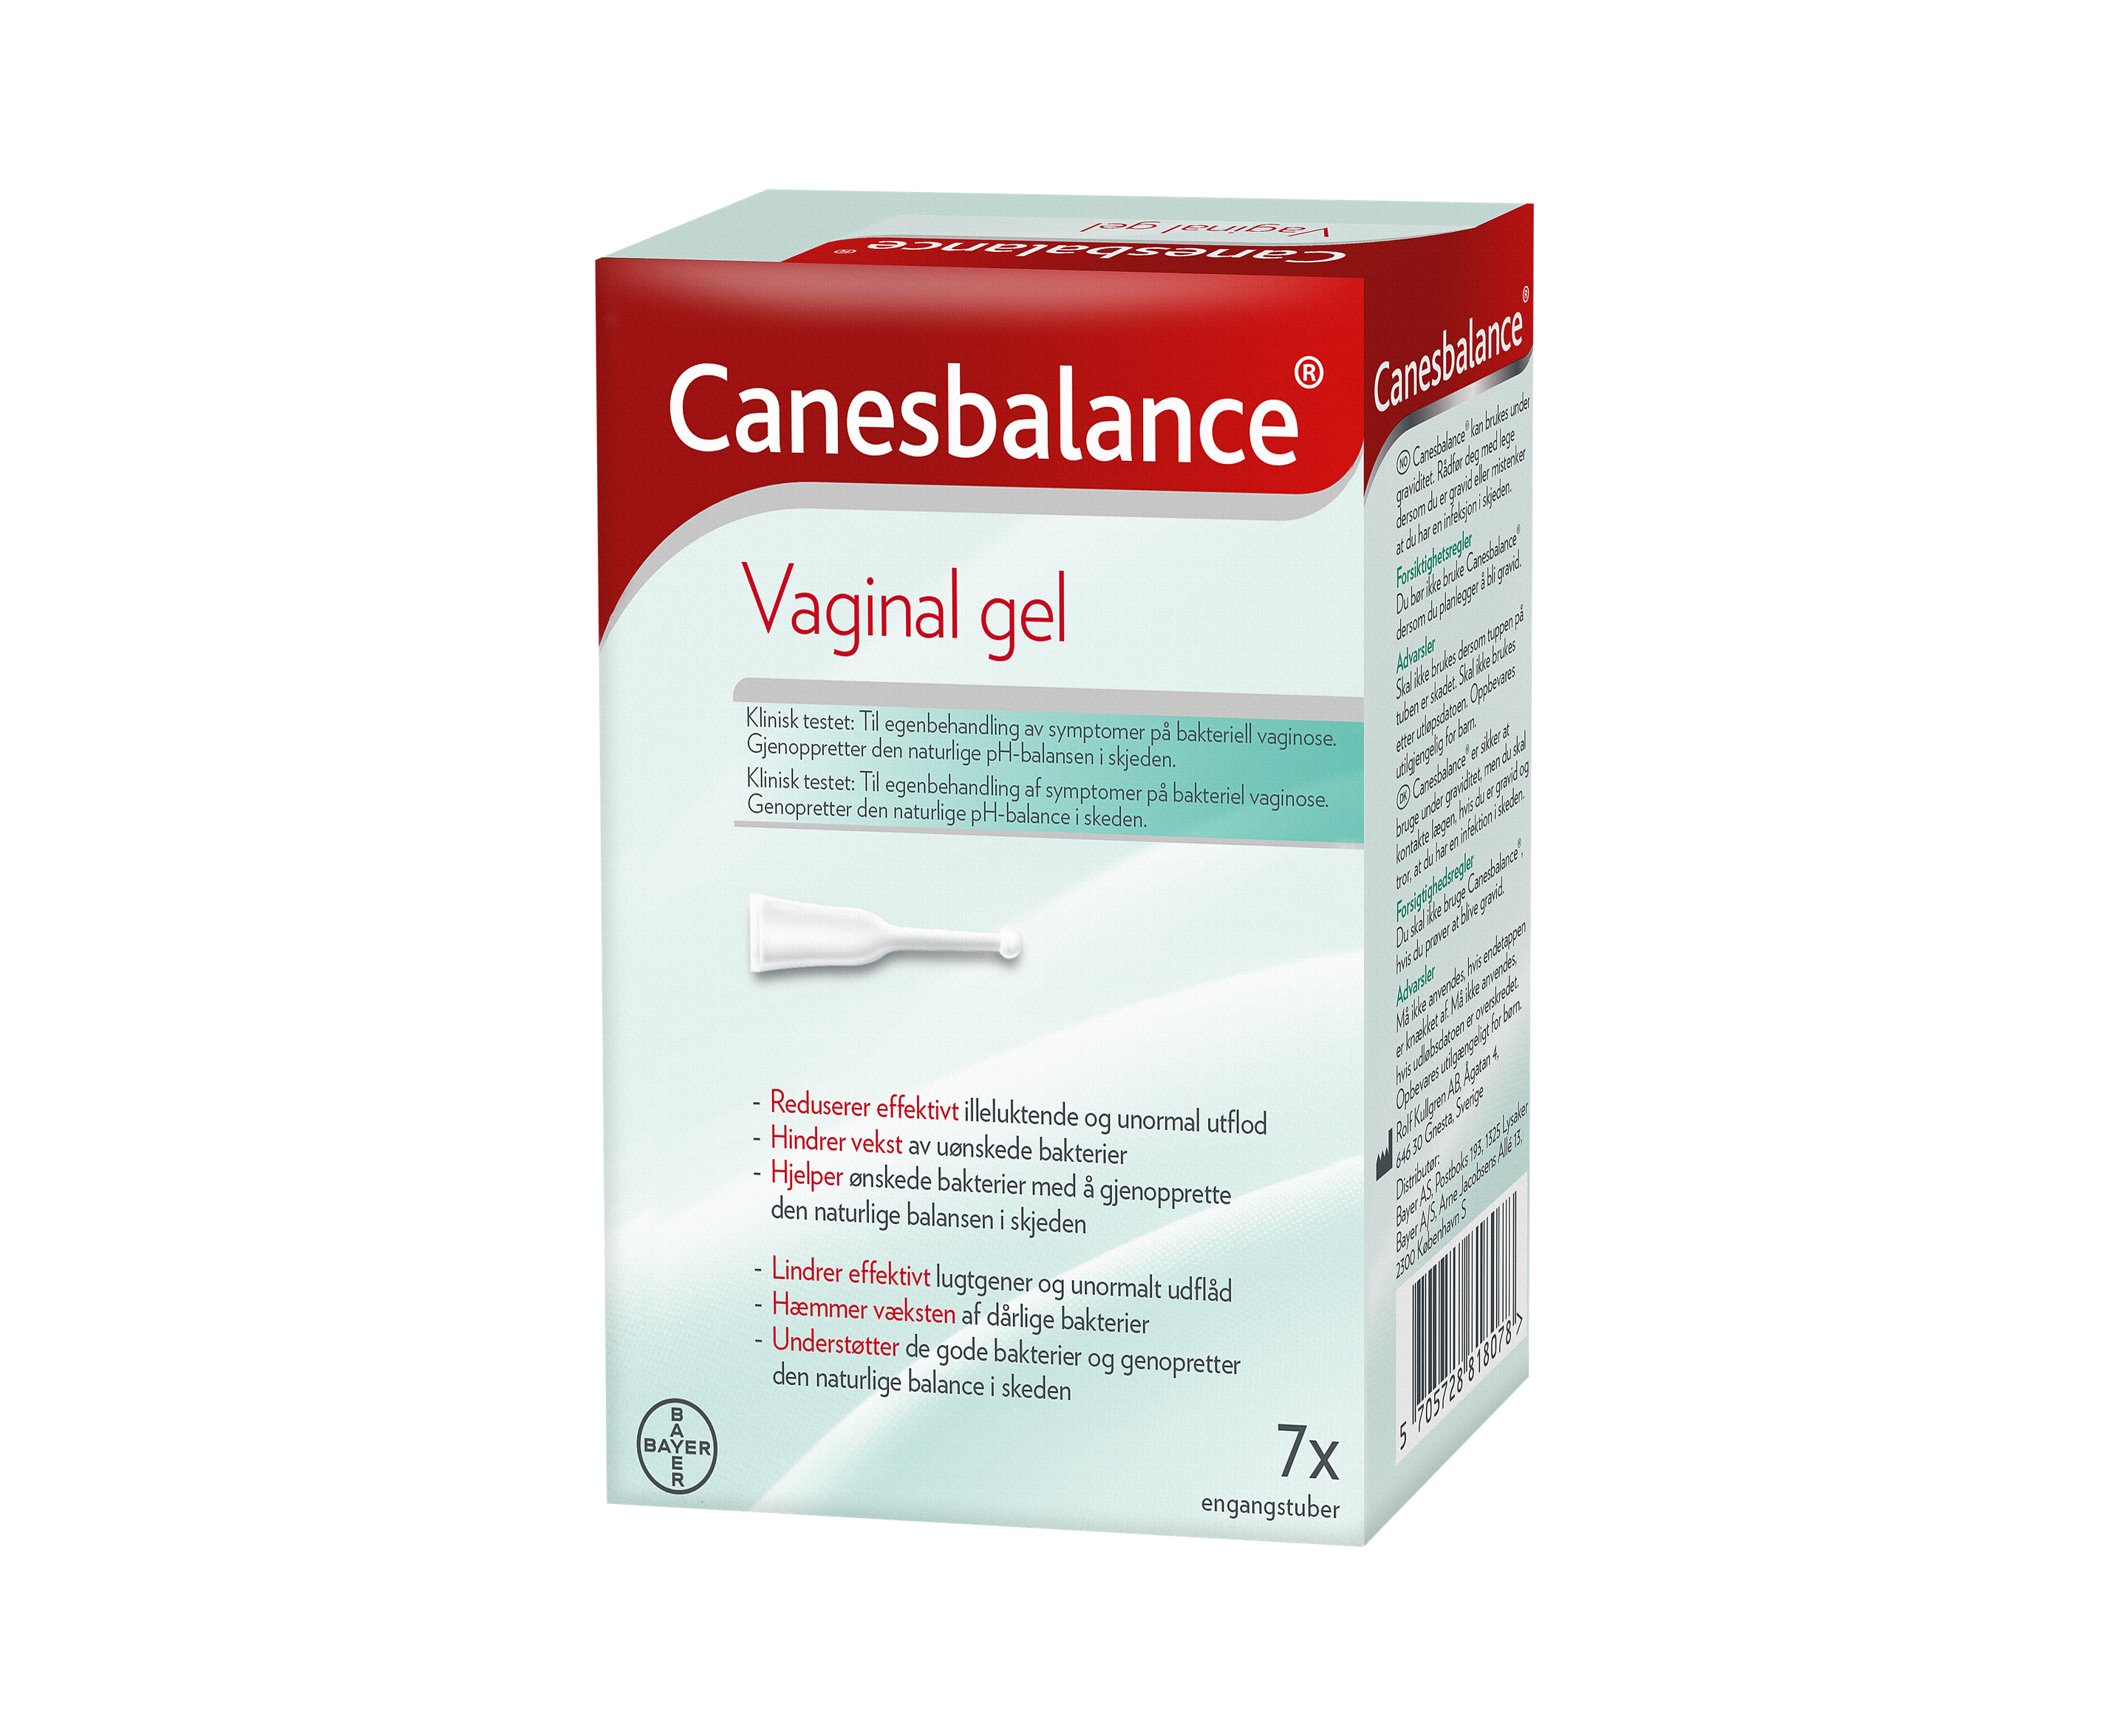 Canesbalance vaginalgel mot symptomer på bakteriell vaginose